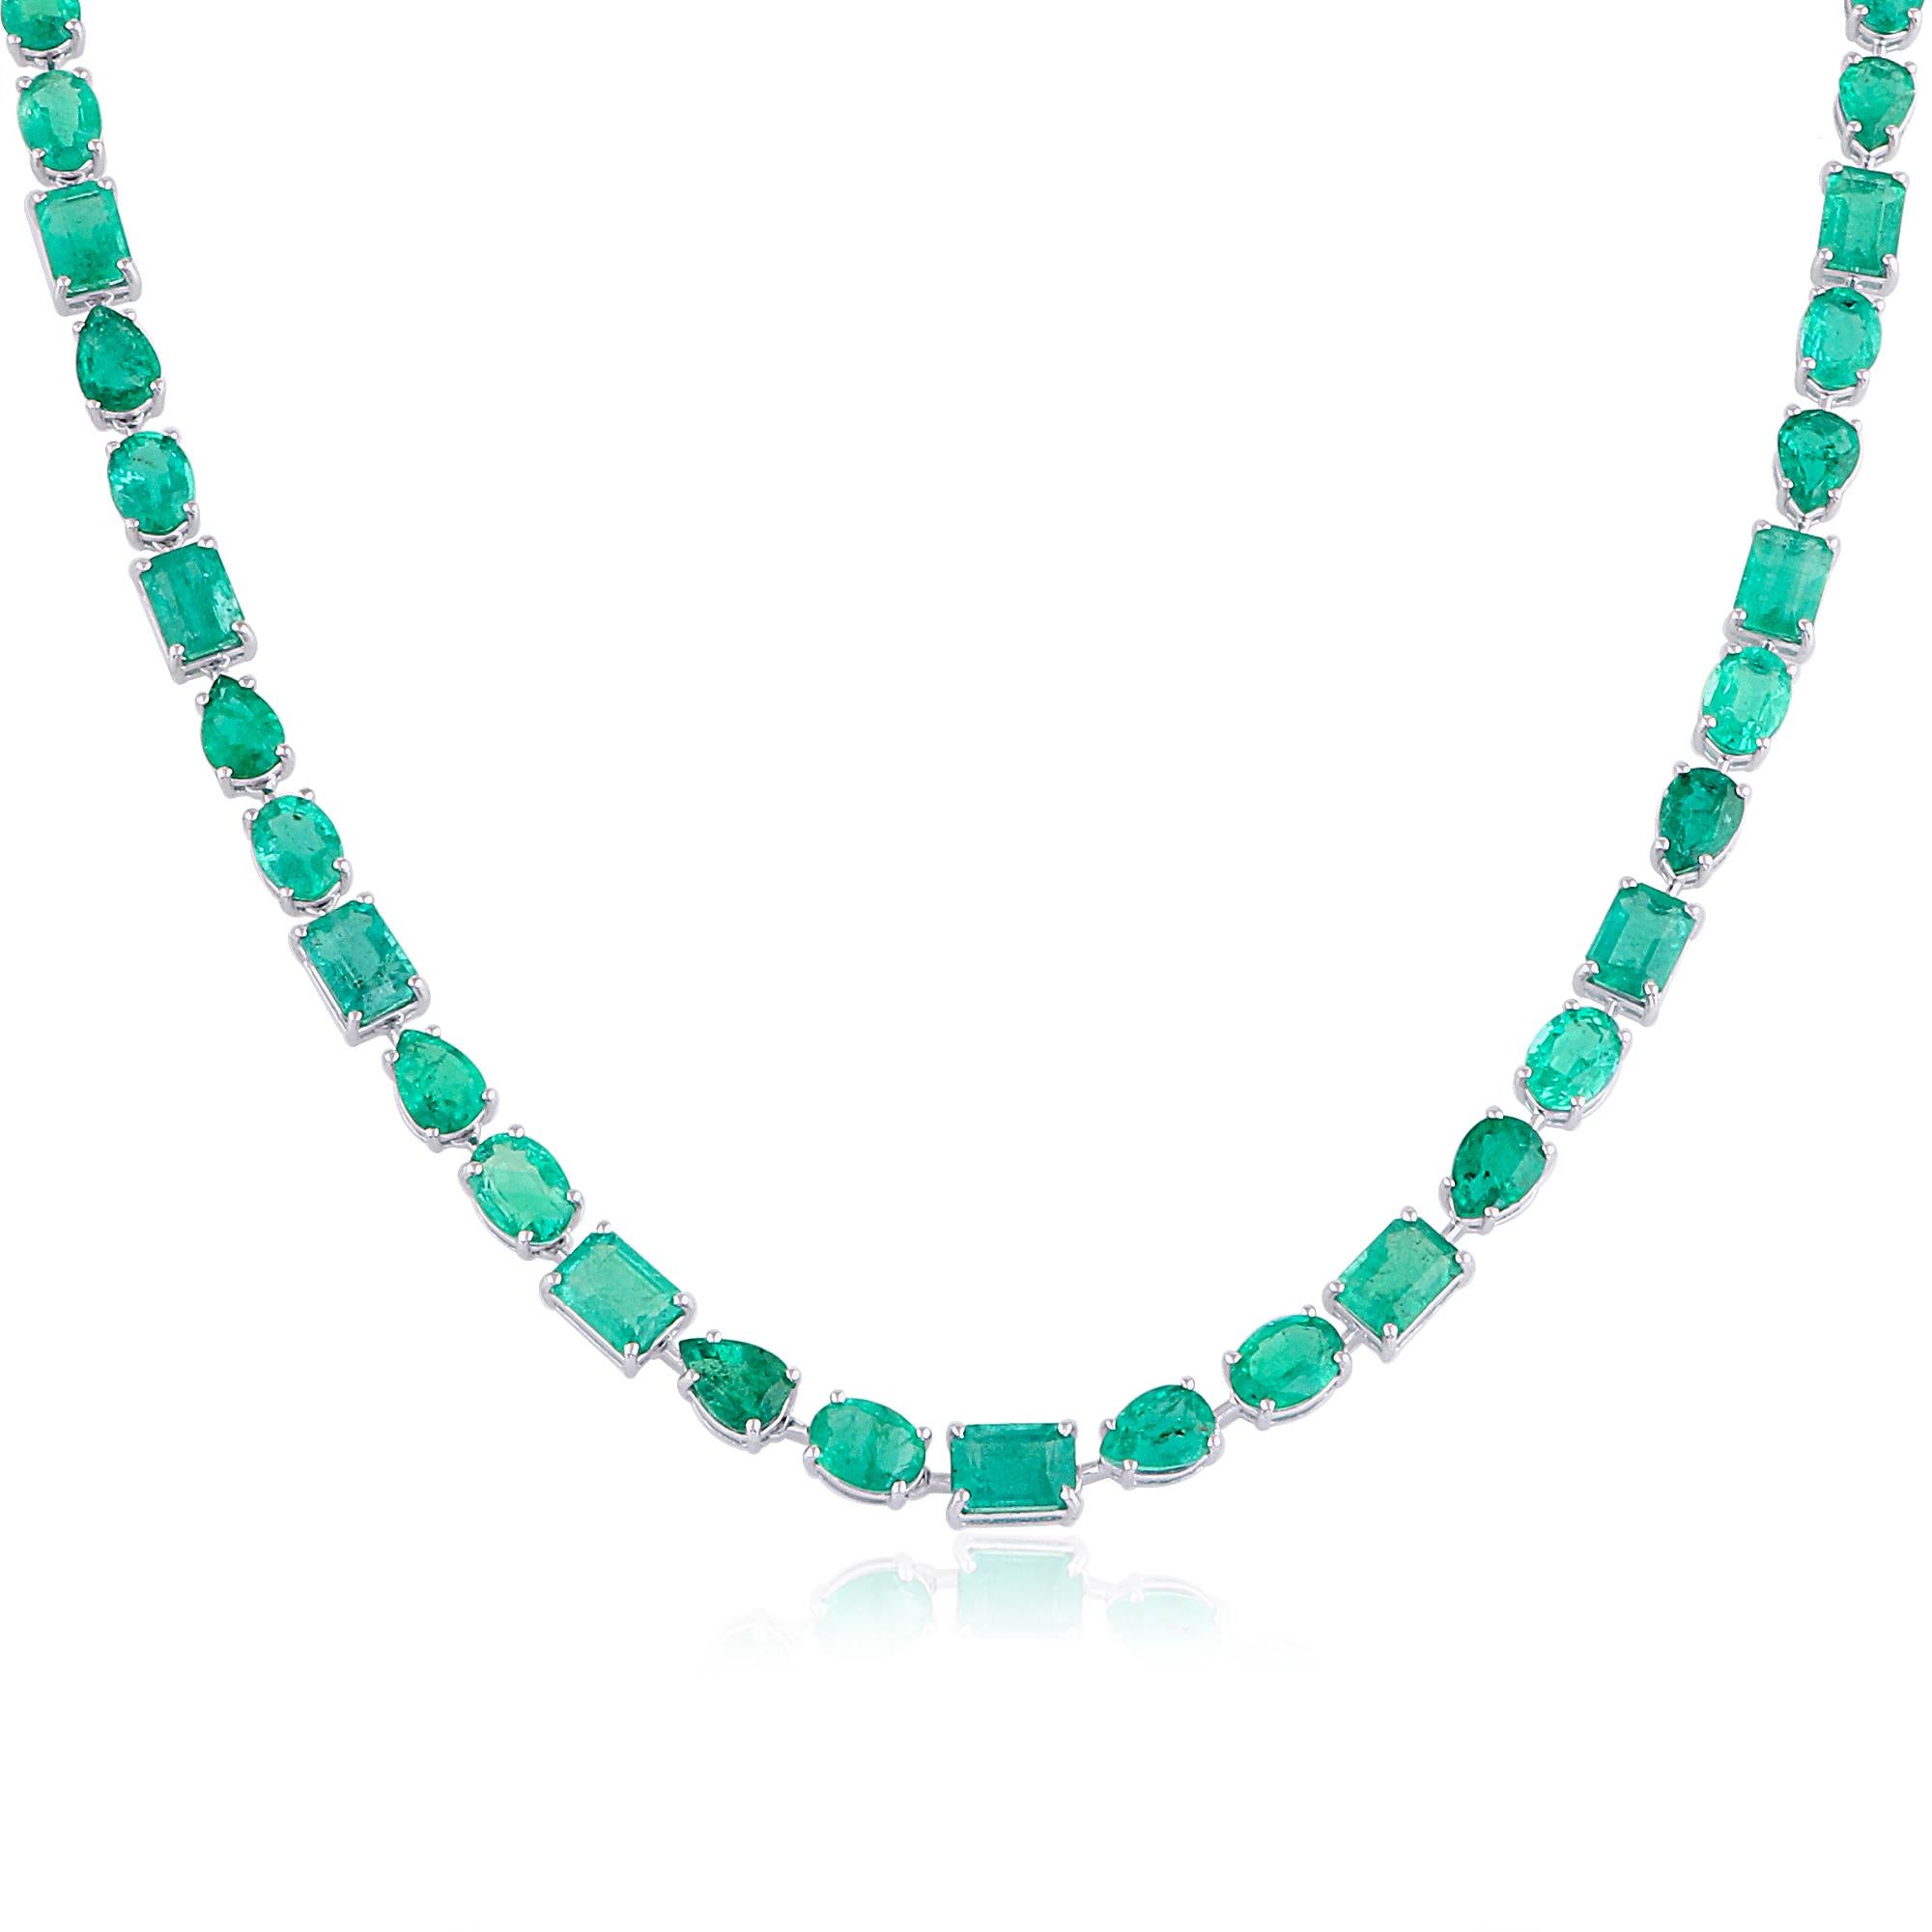 Diese 34,51 Karat schwere, natürliche Smaragd-Edelstein-Halskette ist ein wahres Meisterwerk, das zeitlose Eleganz und Raffinesse ausstrahlt. Ob als umwerfendes Accessoire zu einem Abendkleid oder als luxuriöses Statement-Stück, das Ihren